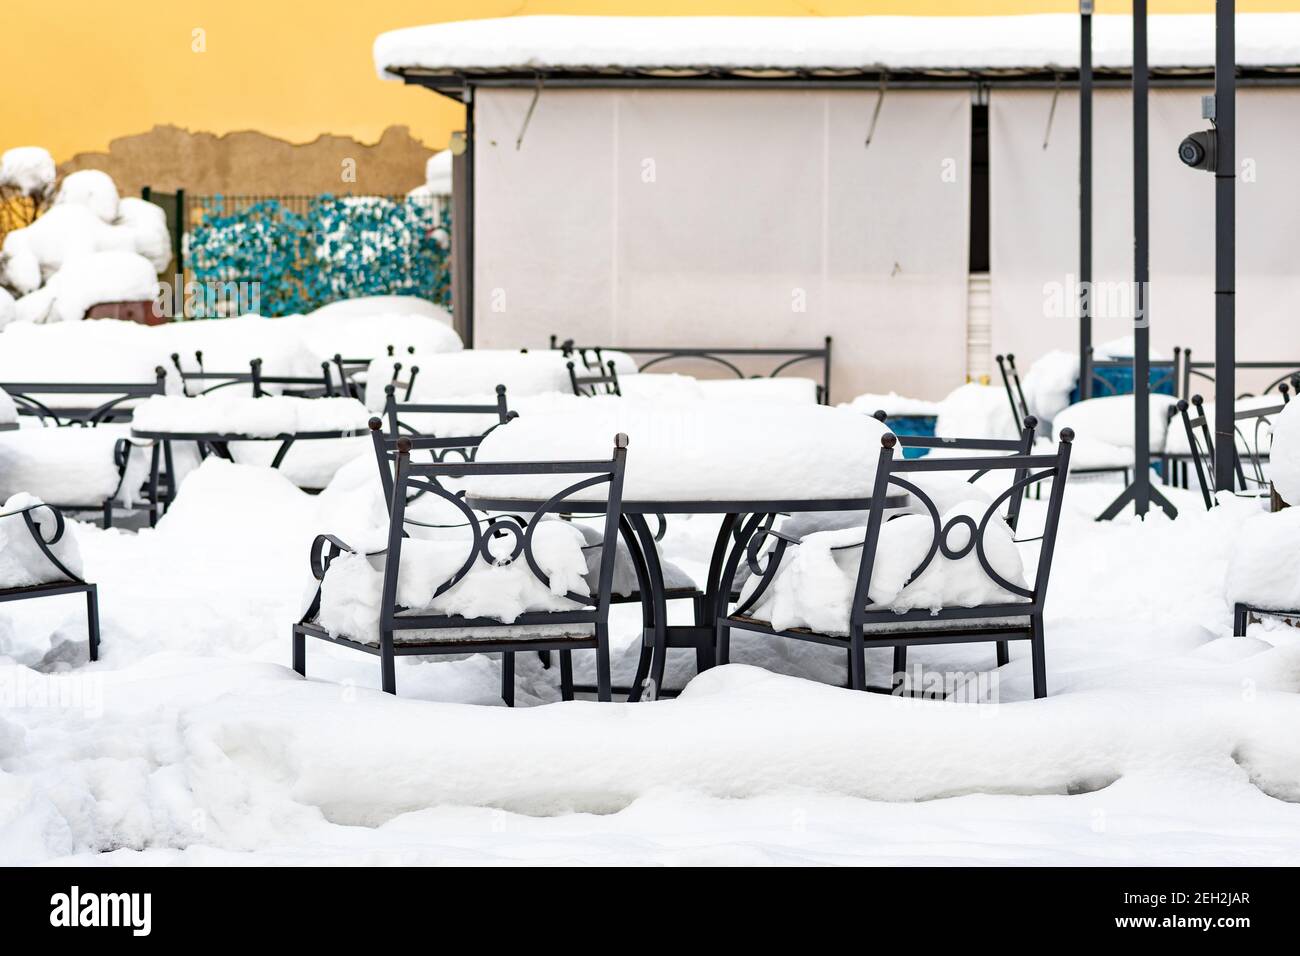 Vider les tables et les chaises couvertes de neige. Covid ou coronavirus affecte l'industrie alimentaire mondiale, les restaurants et le bar en faillite en raison de la crise Banque D'Images